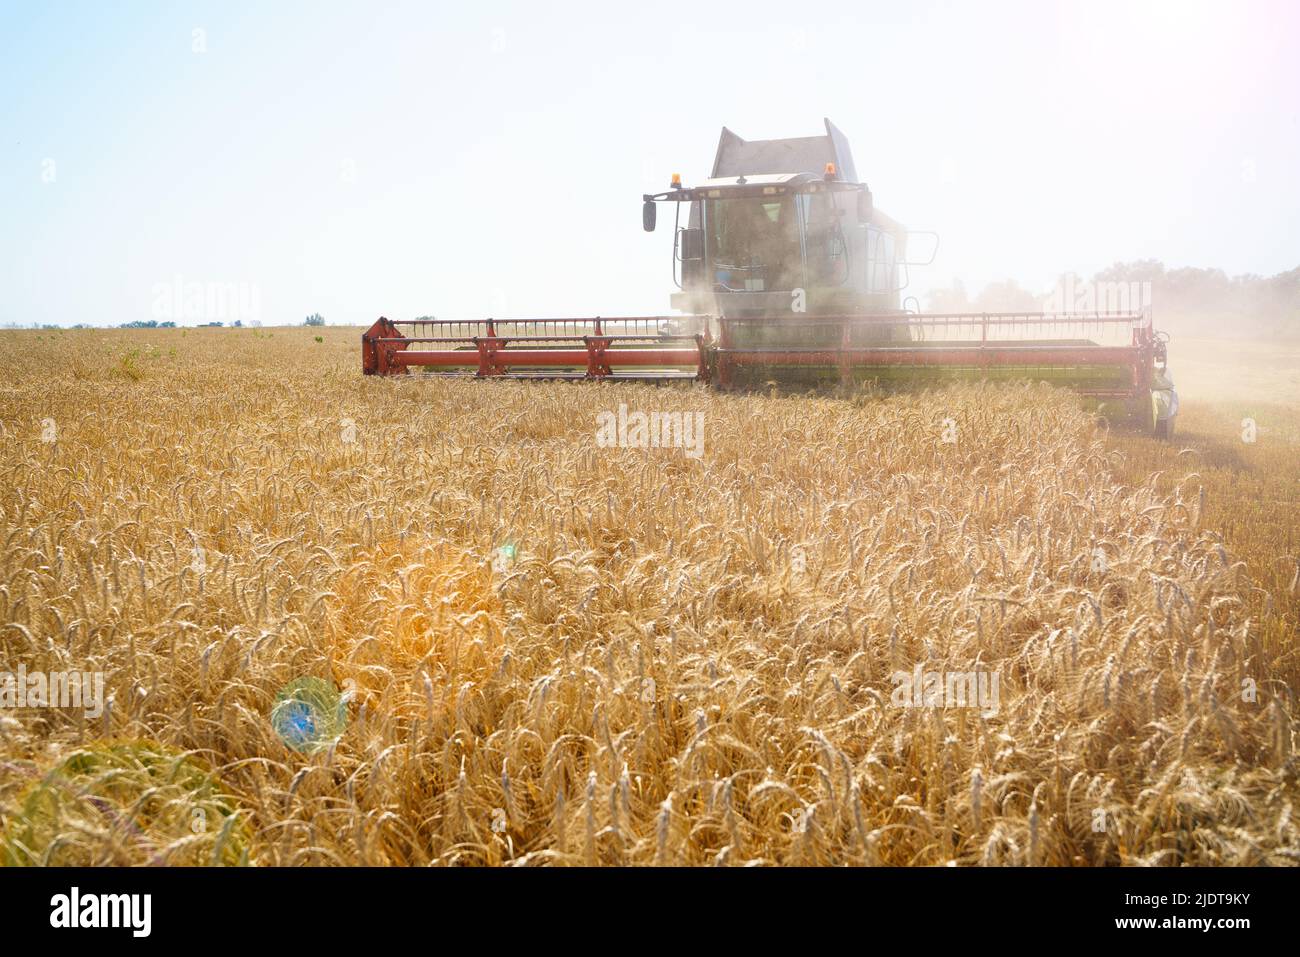 Der Mähdrescher entfernt reifen Weizen. Landwirtschaftliche Arbeit, Ernte Getreide auf dem Feld. Stockfoto